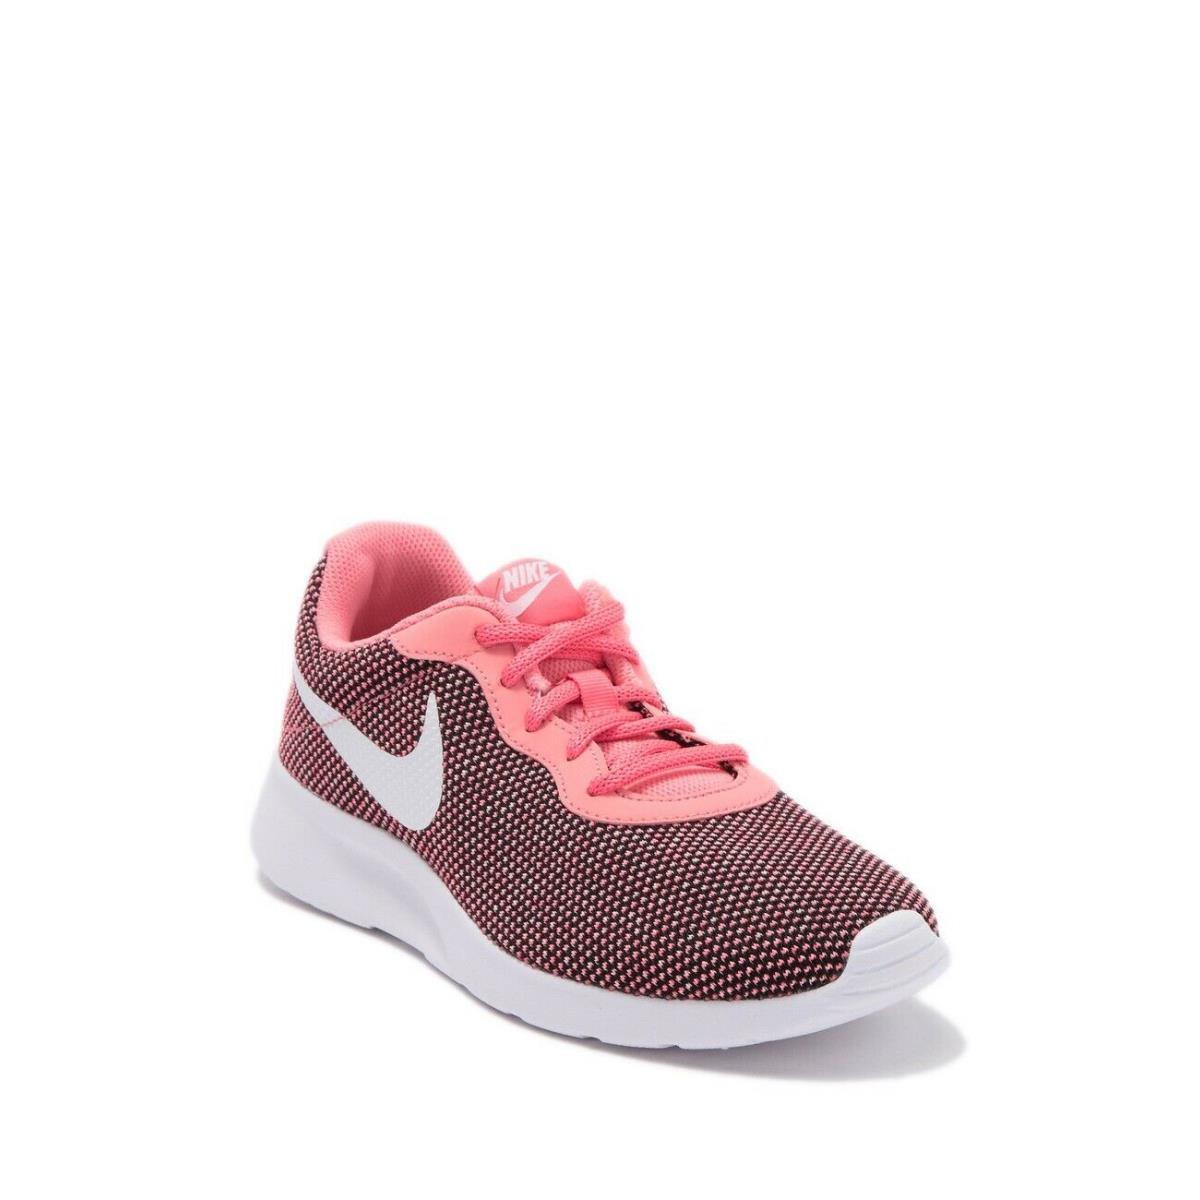 Nike Tanjun Women Size 6 Running Walking Shoes Pink BV7432 002